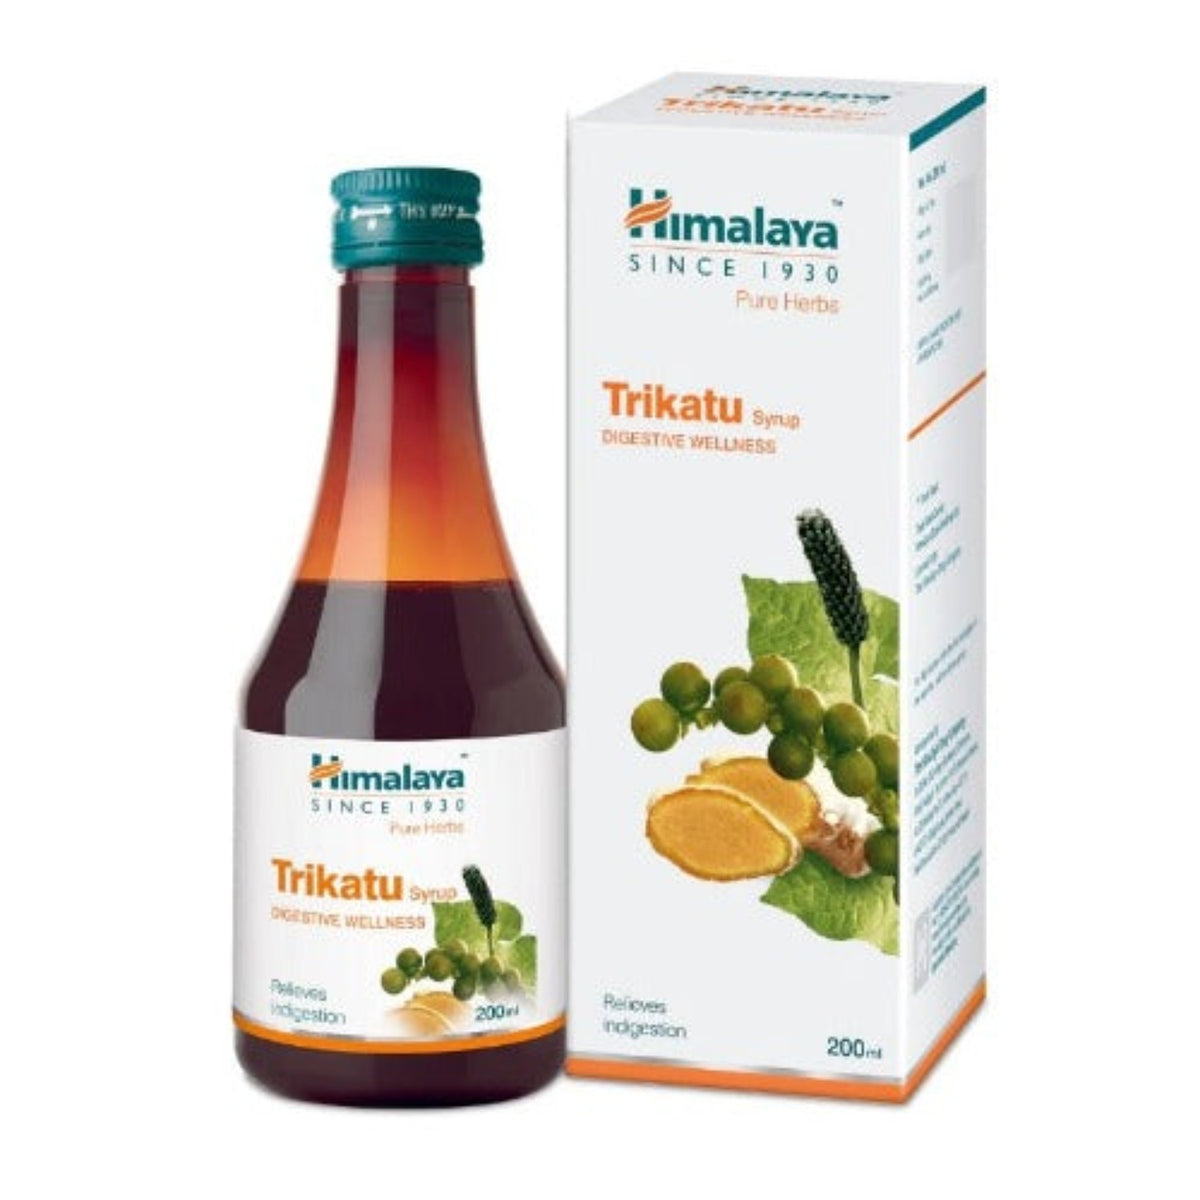 Himalaya Pure Herbs Digestive Wellness Kräuter-Ayurvedisches Trikatu lindert Verdauungsstörungen, Sirup 200 ml